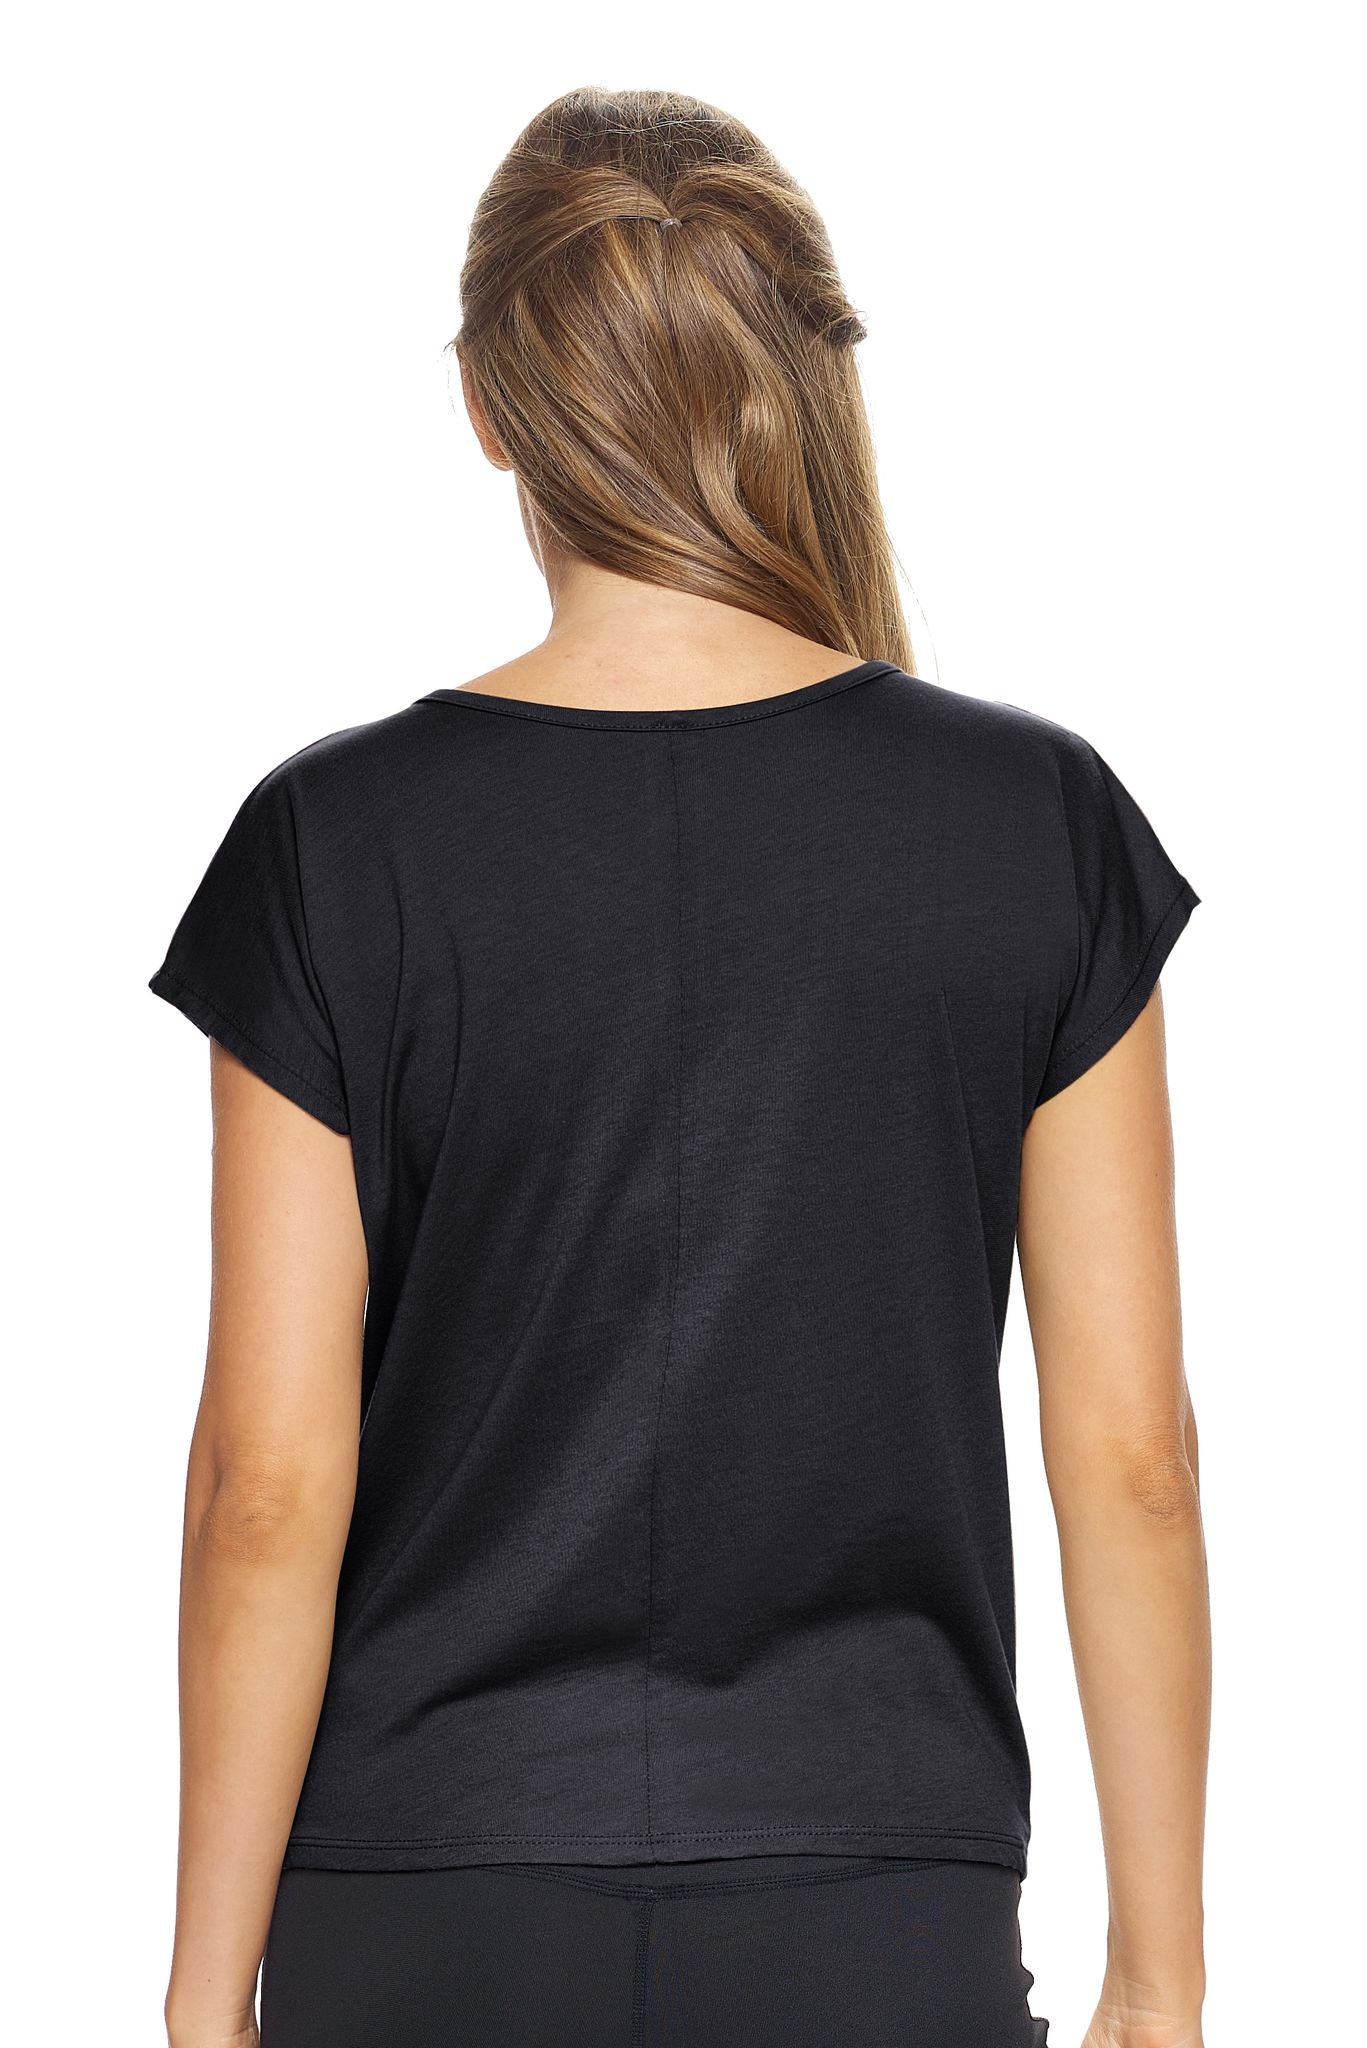 Expert Brand Wholesale Women's MoCA™ Split Front Tie Tee in Black Image 3#black